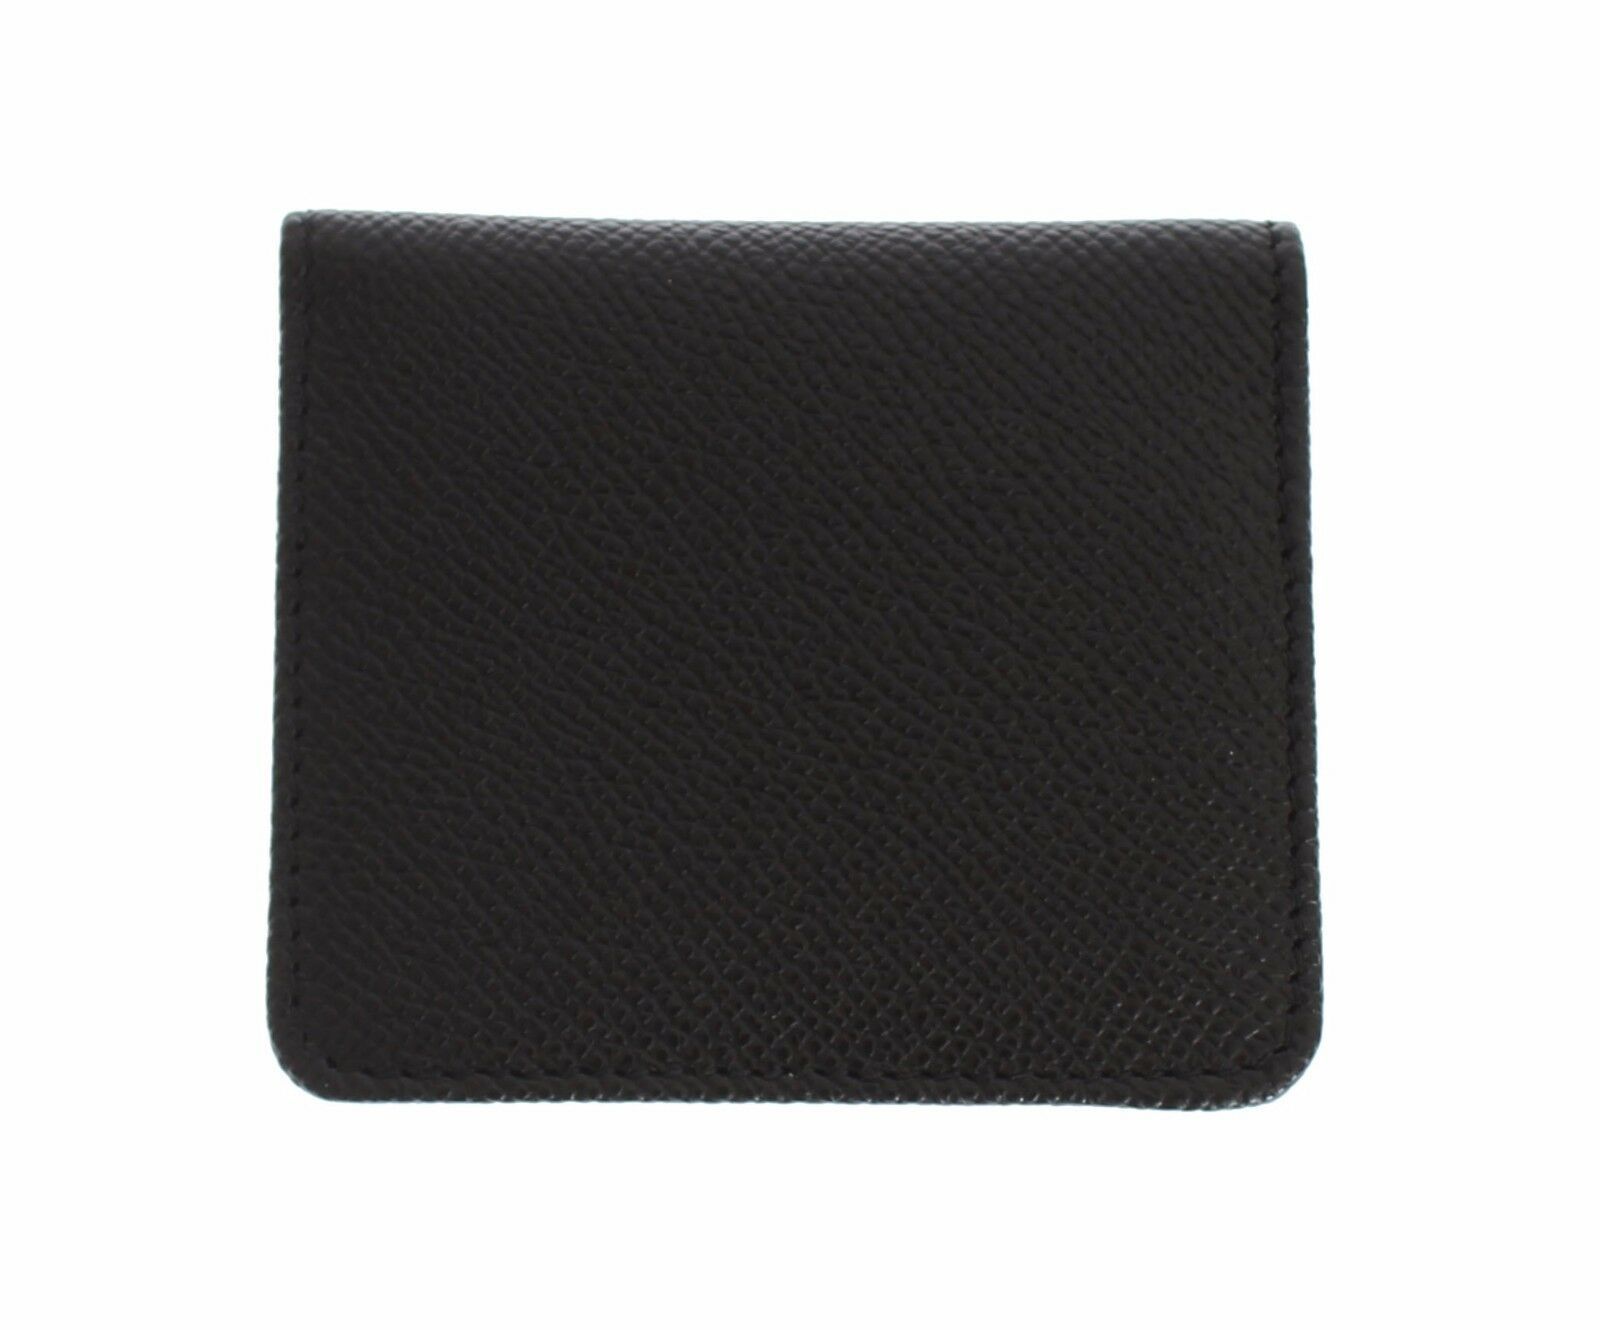 Black Dauphine Leather Condom Case Holder